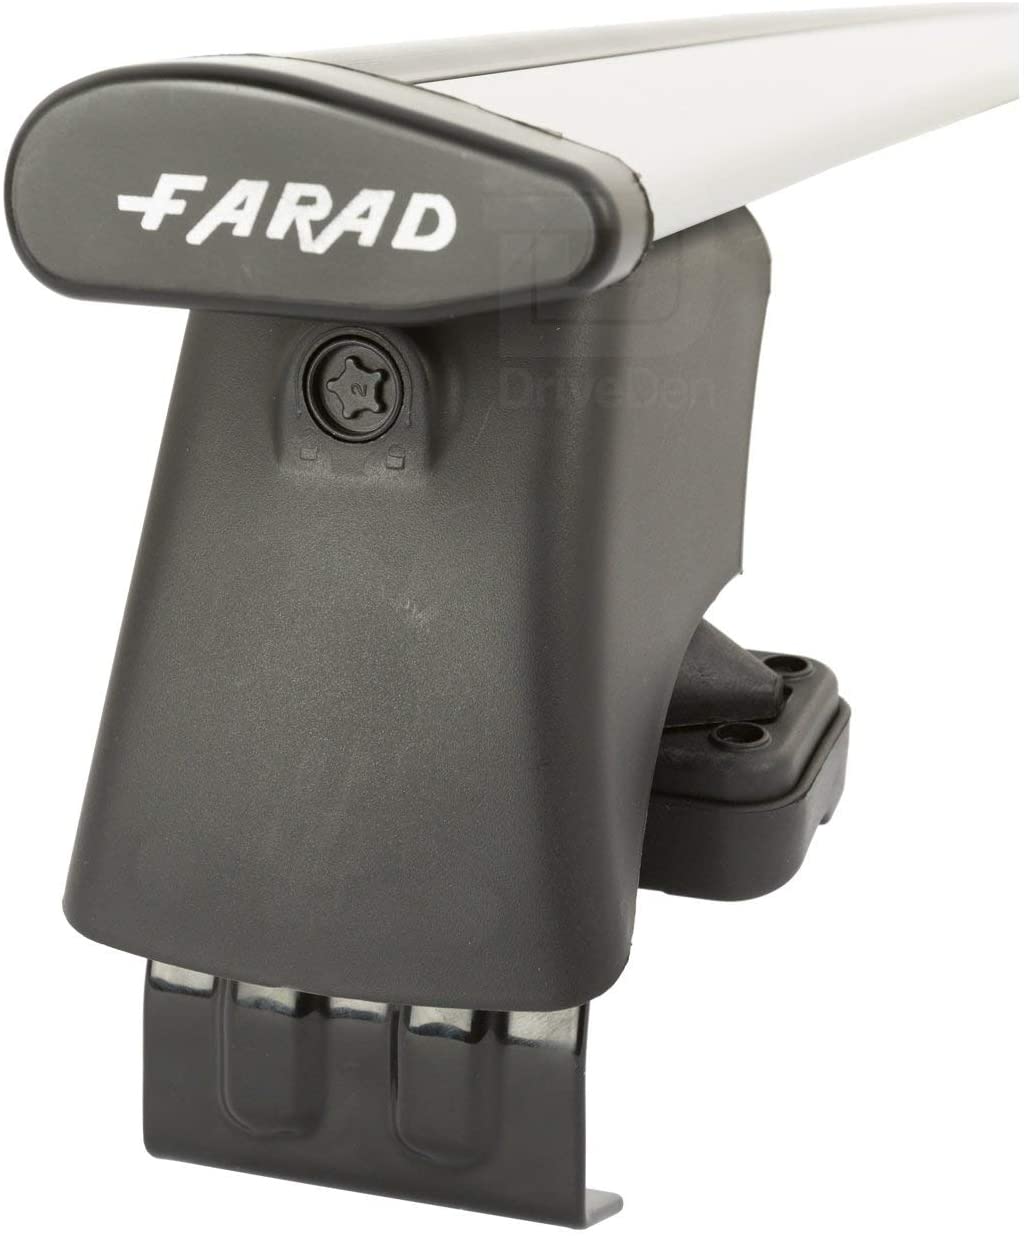 FARAD-Kit H2 per barre portatutto - Volkswagen Polo 2001-2009 (senza corrimano)